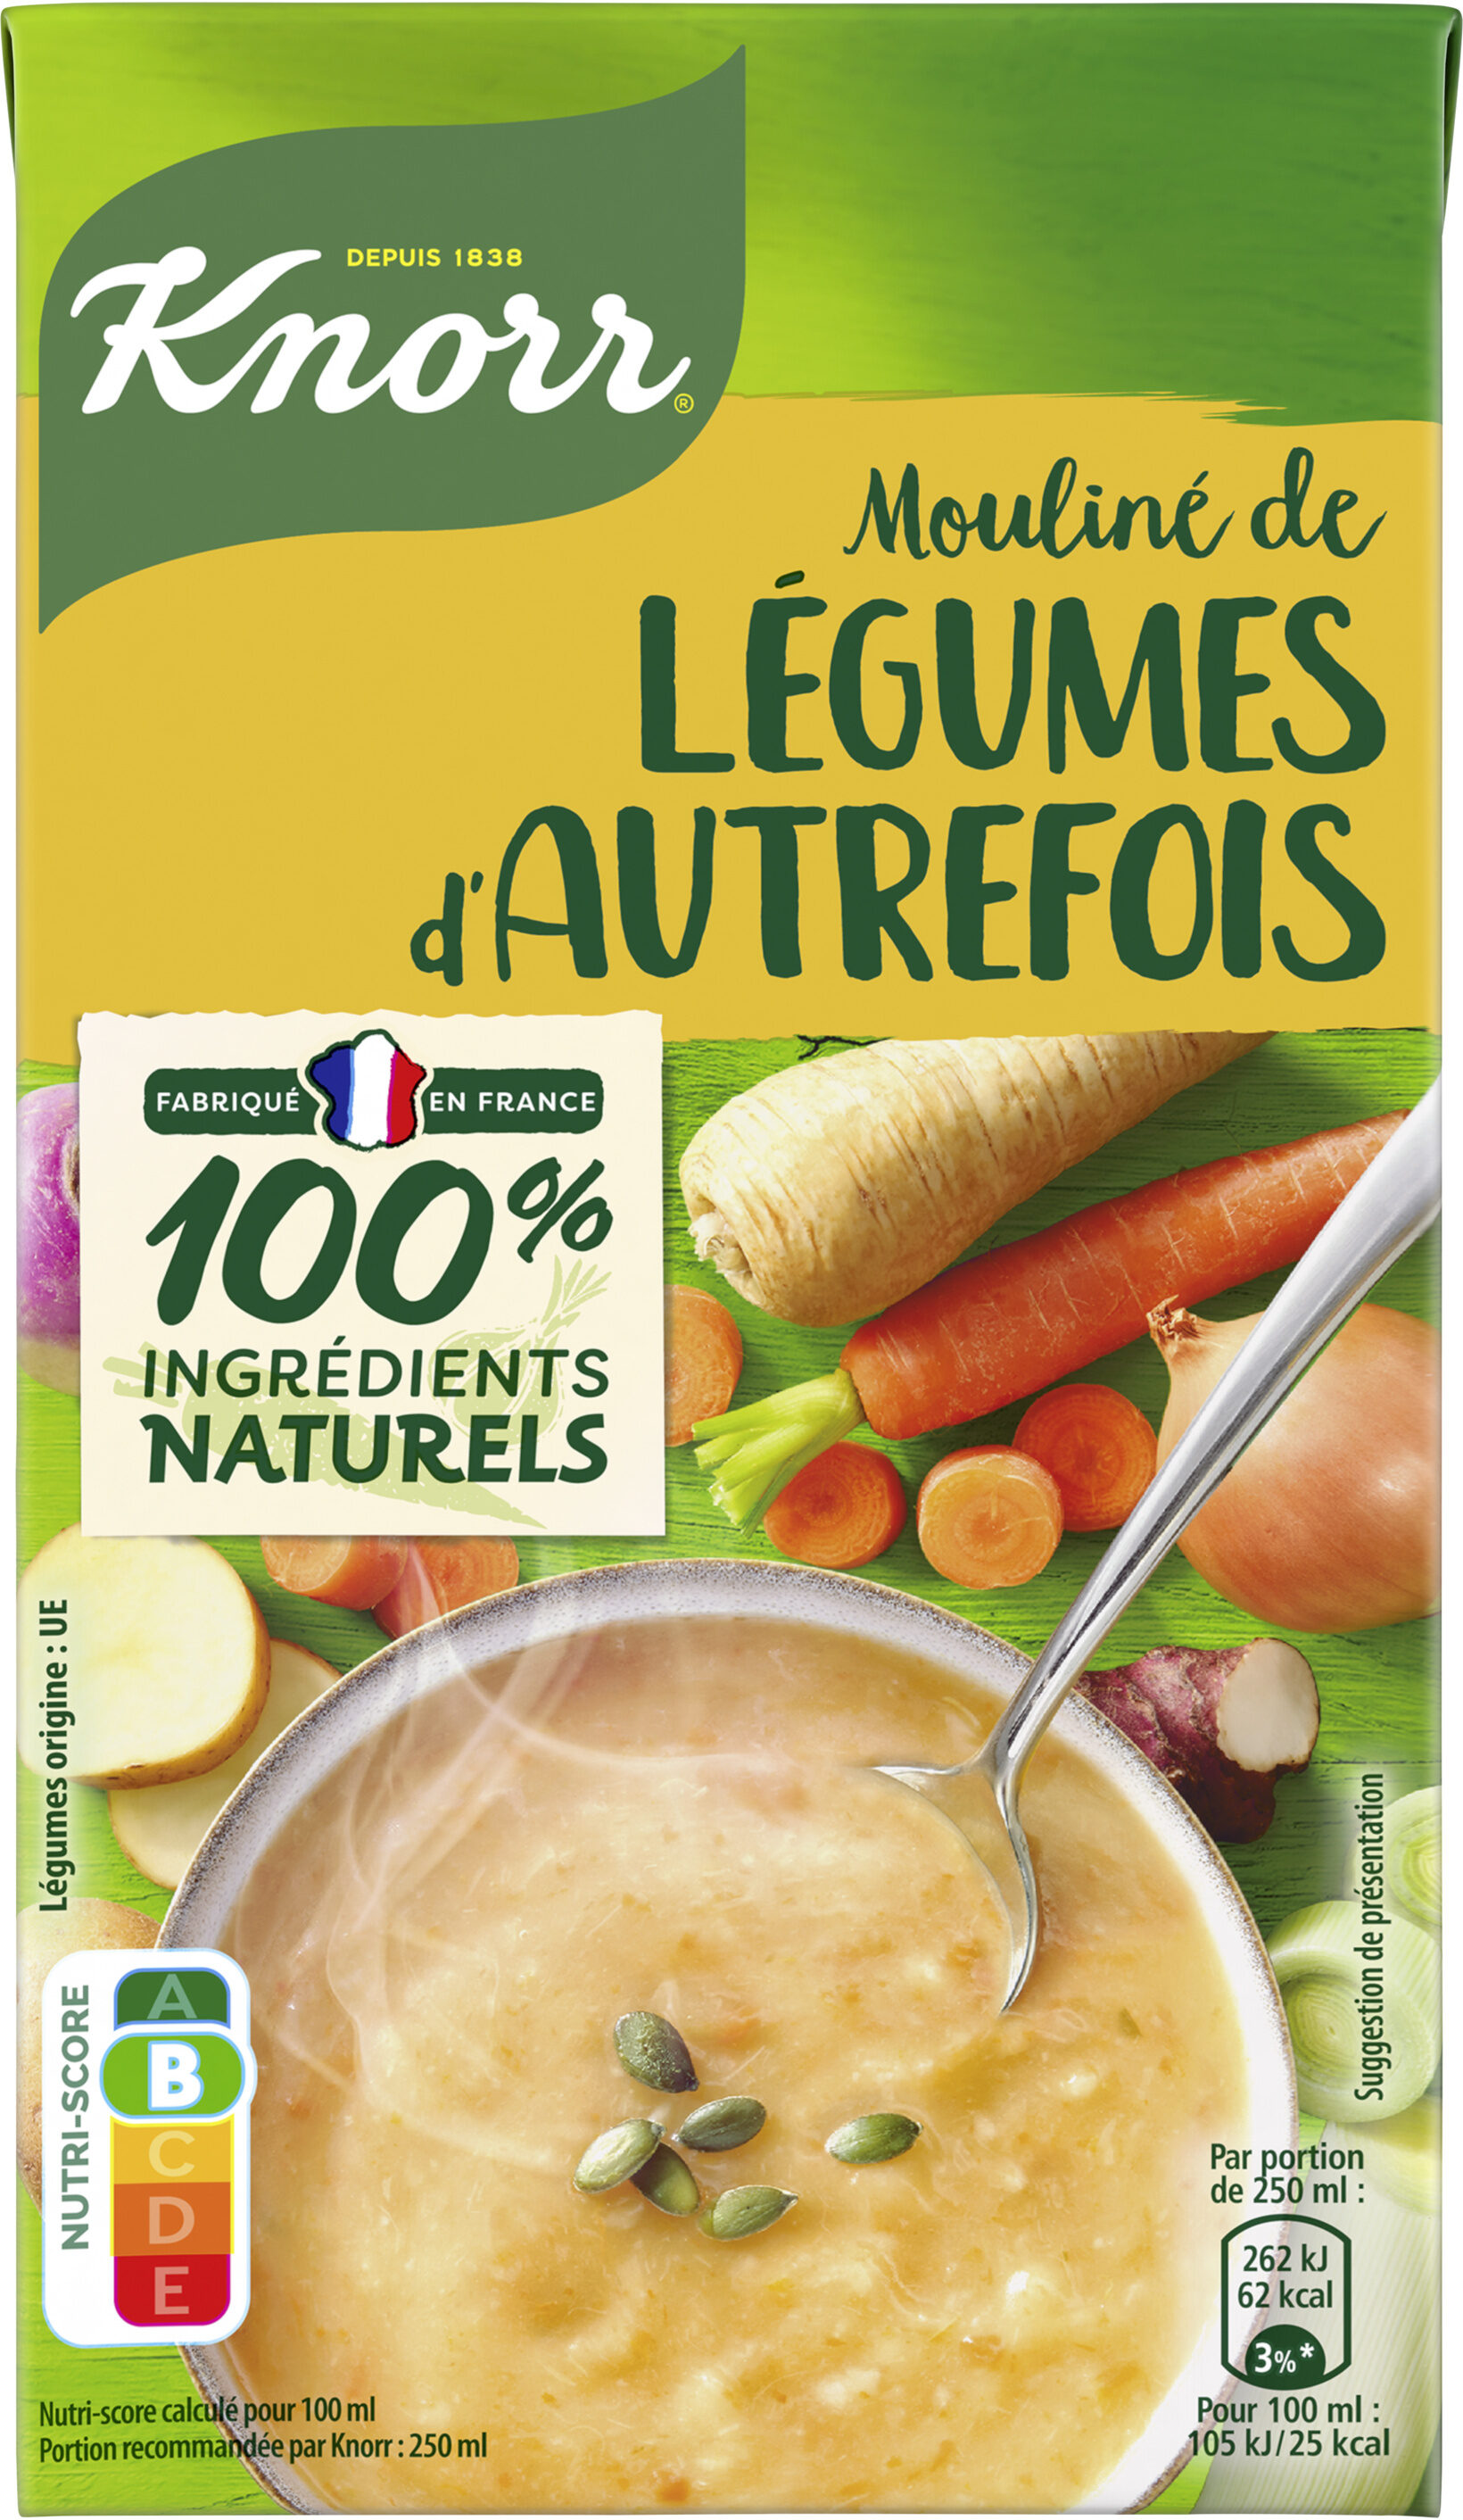 Mouliné de Légumes d'Autrefois - Produkt - fr